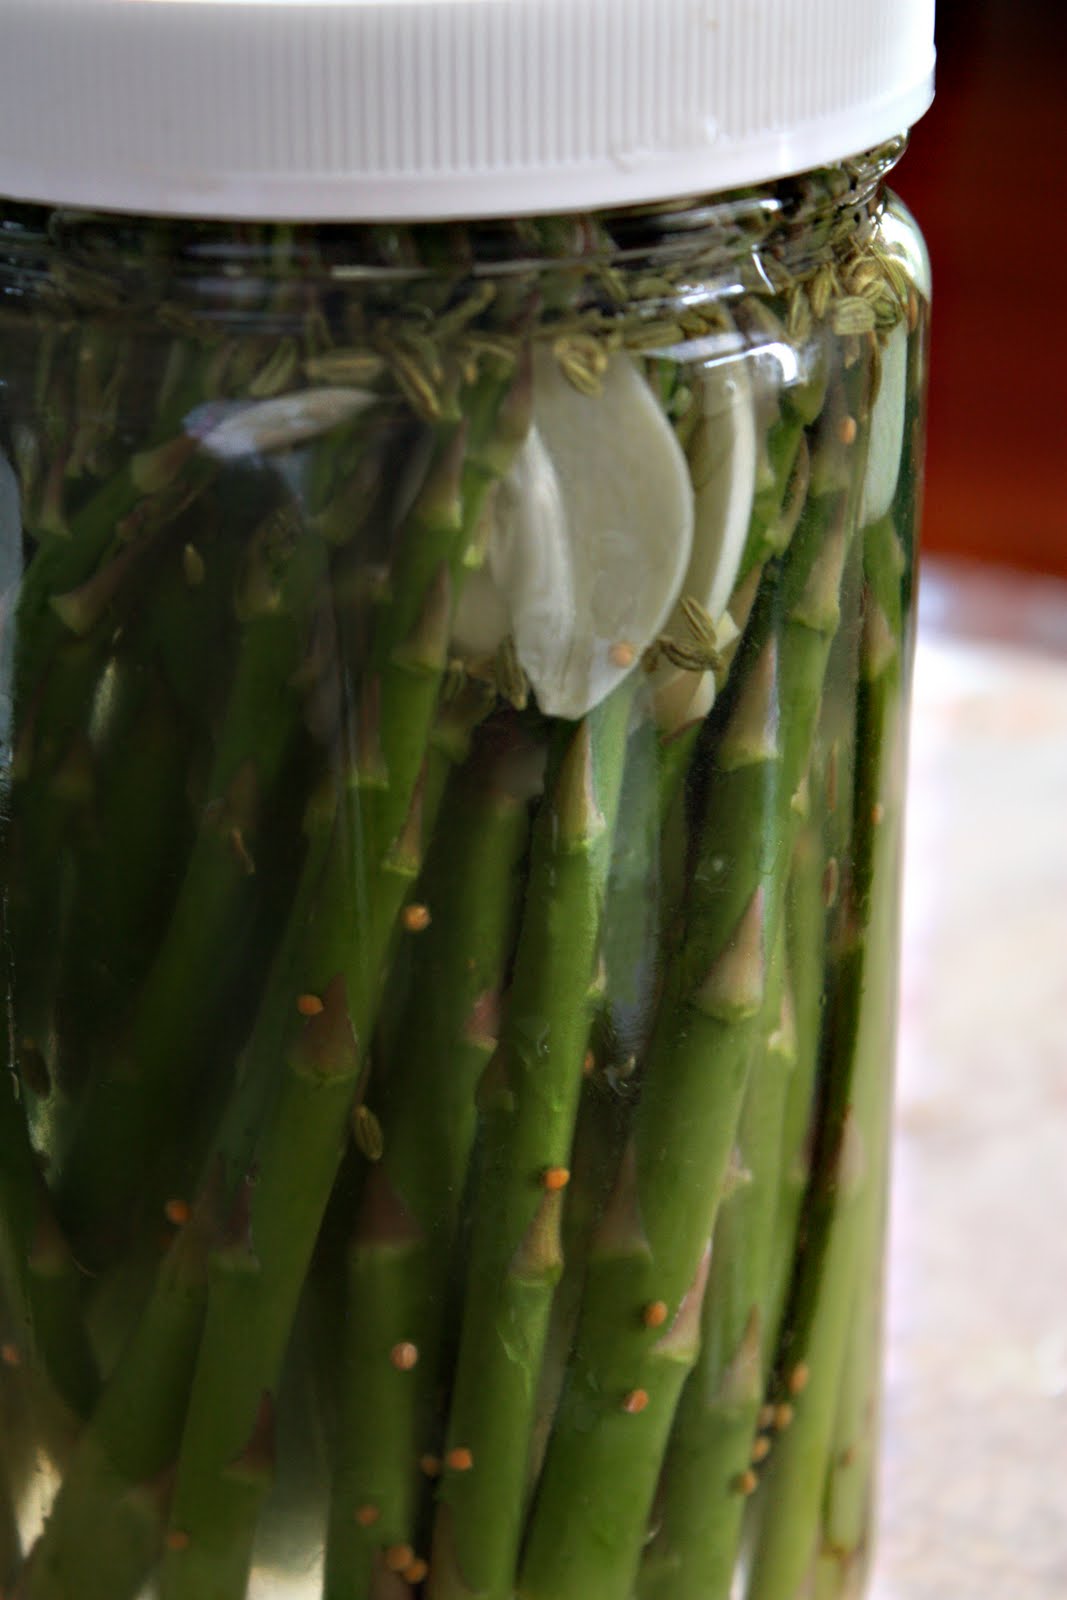 How long does asparagus keep in the fridge?